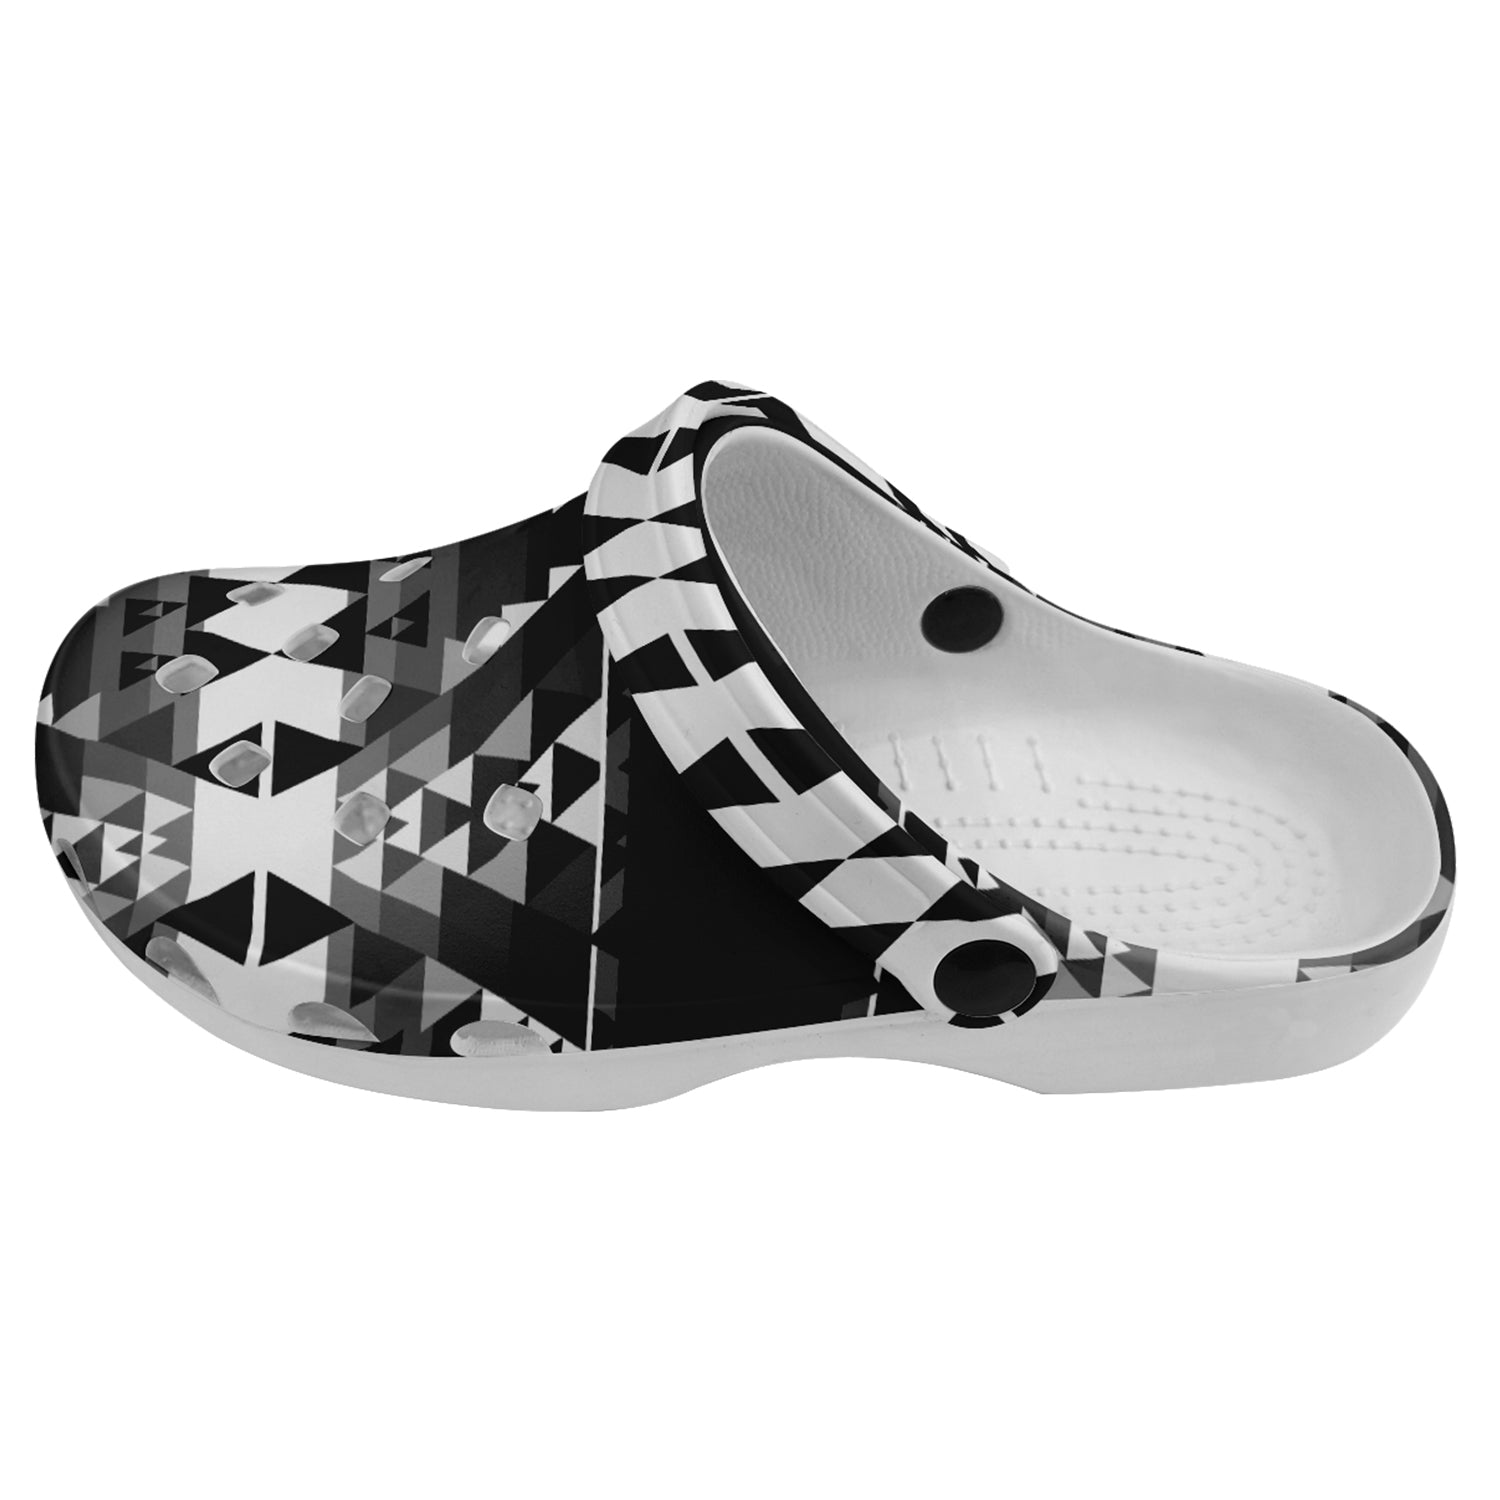 Writing on Stone Black and White Muddies Unisex Clog Shoes